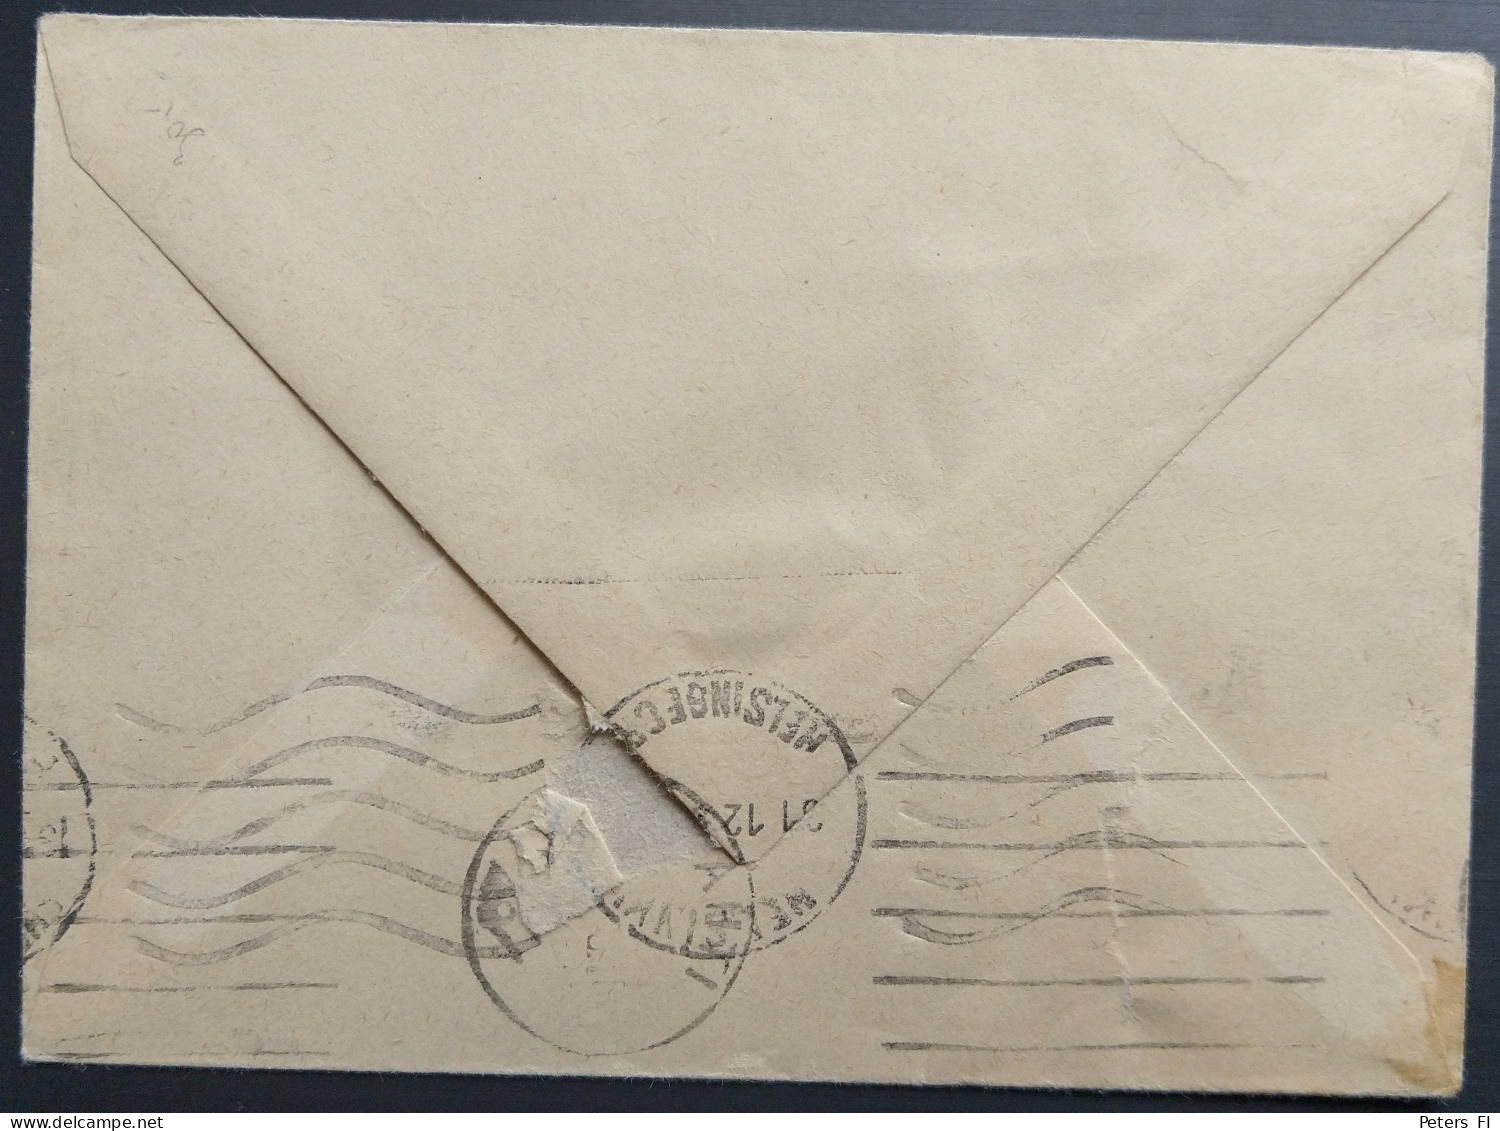 Schweiz, Pro Juventute 1957 Markensatz Auf Dem Brief Nach Finnland - Brieven En Documenten